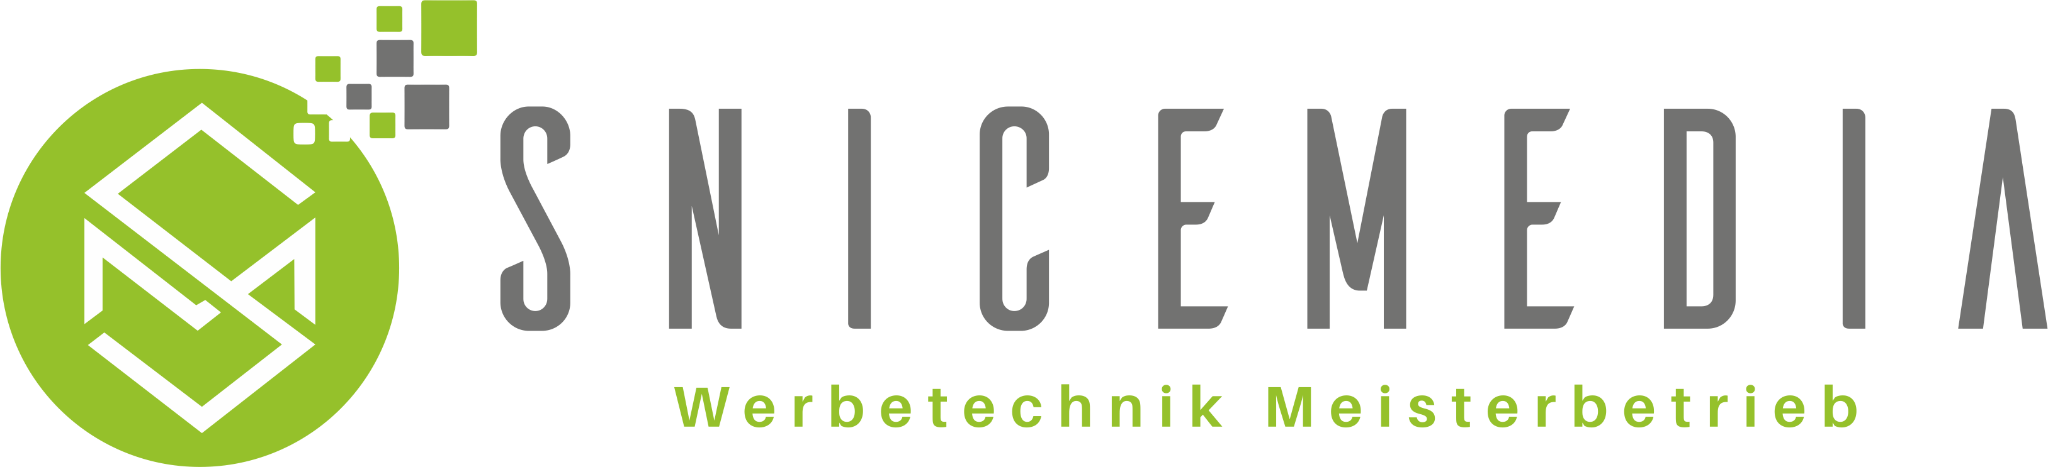 Snicemedia GmbH